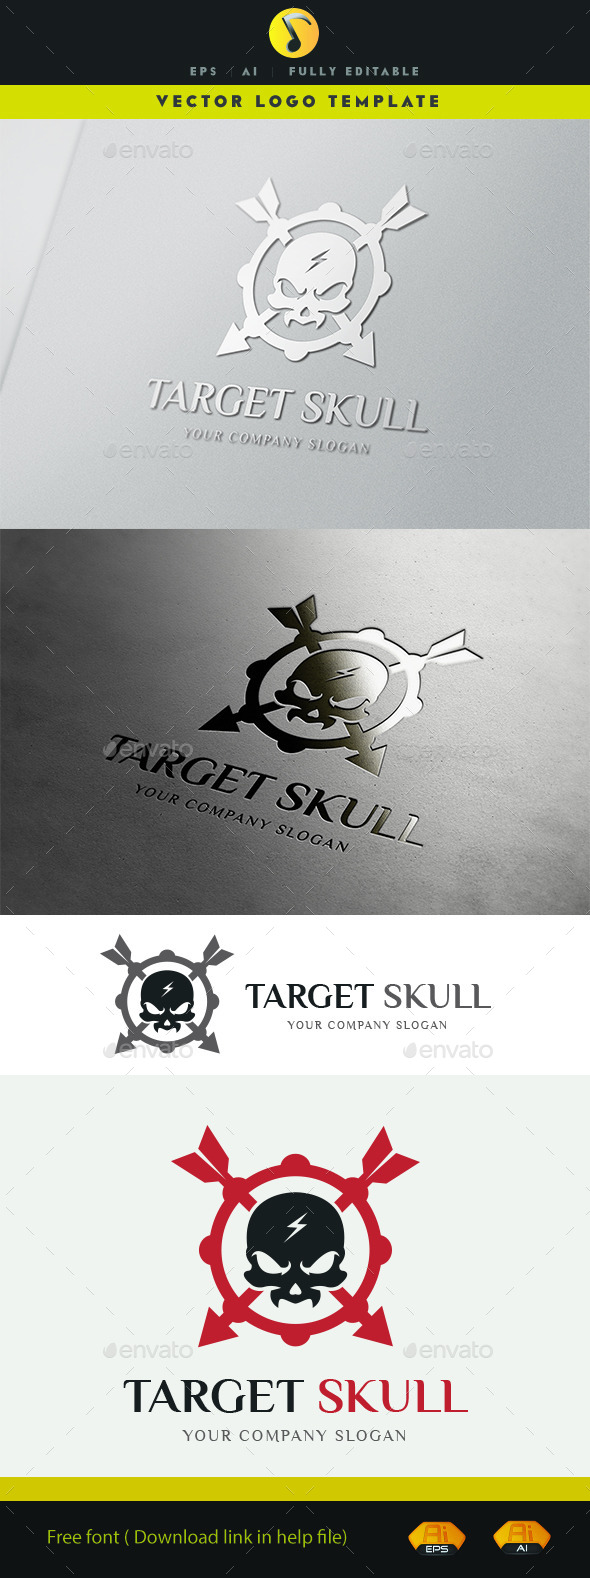 Target Skull